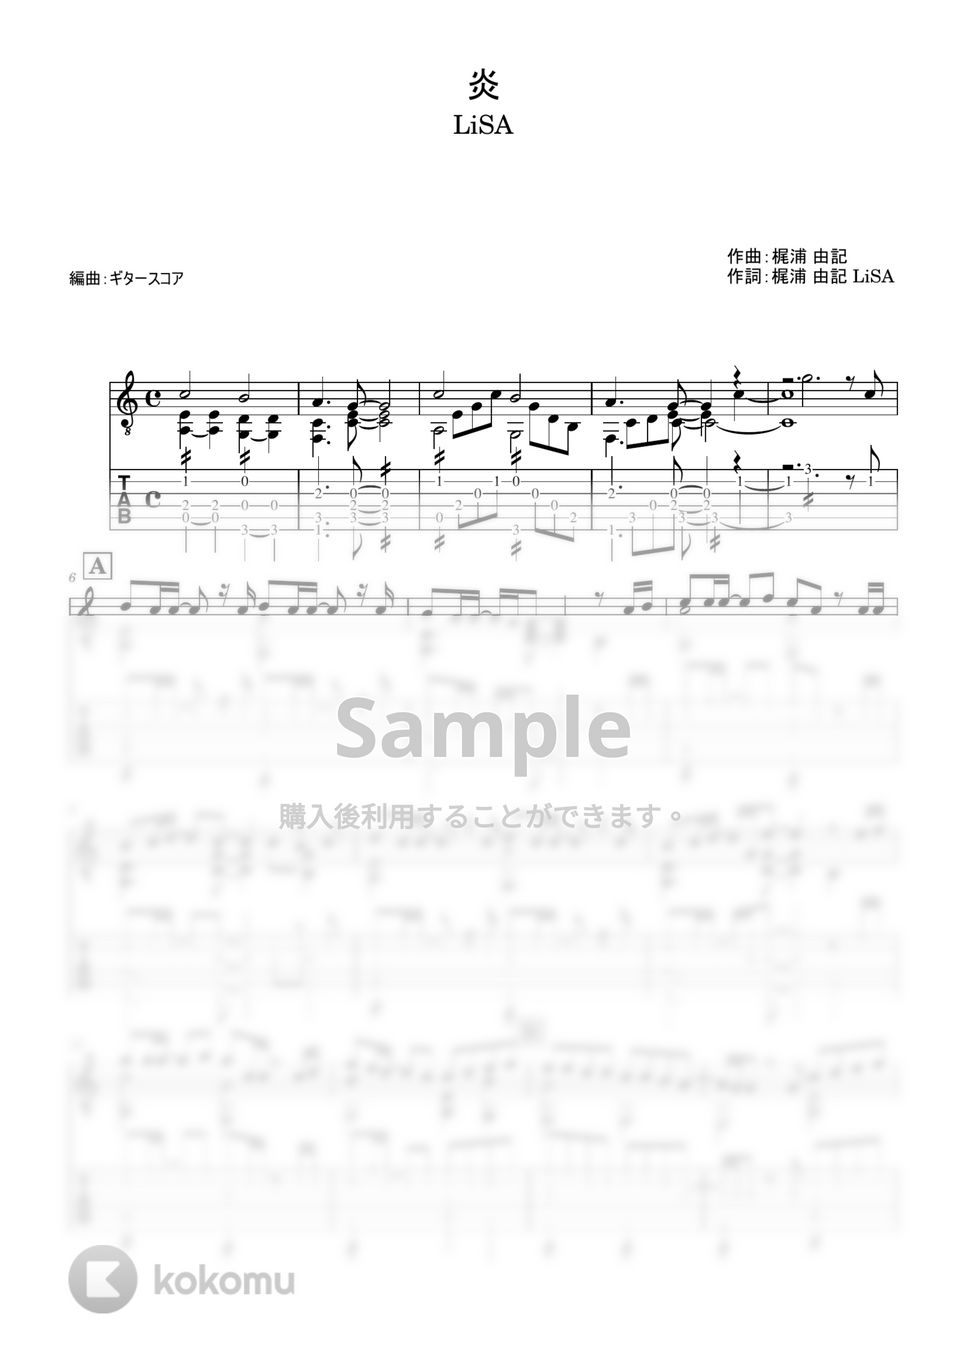 LiSA - 炎 (ギター・ソロ用) by ギタースコア